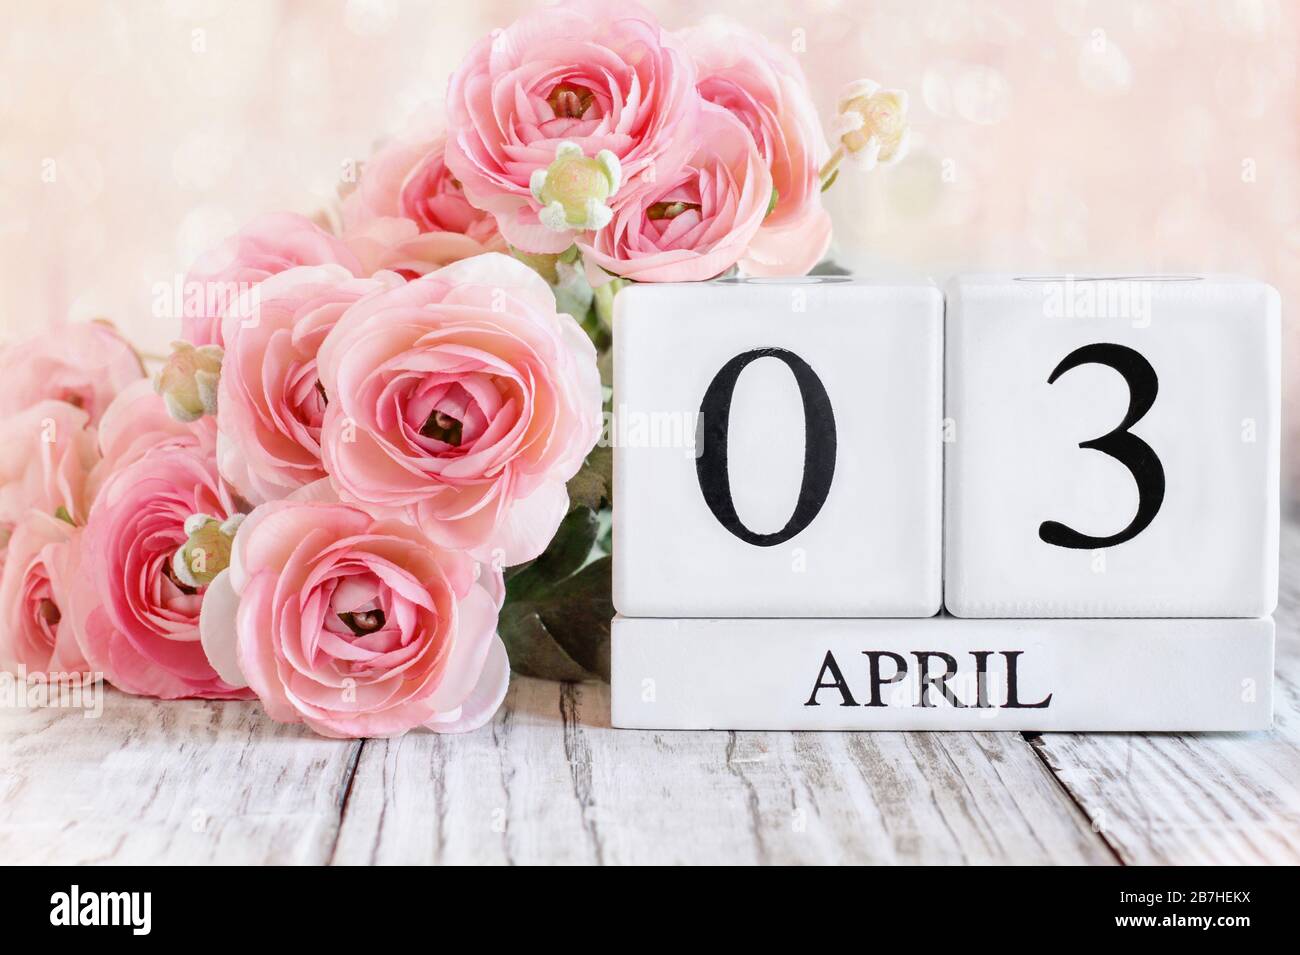 Blocs calendrier en bois blanc avec la date 3 avril. Mise au point sélective avec arrière-plan flou. Banque D'Images